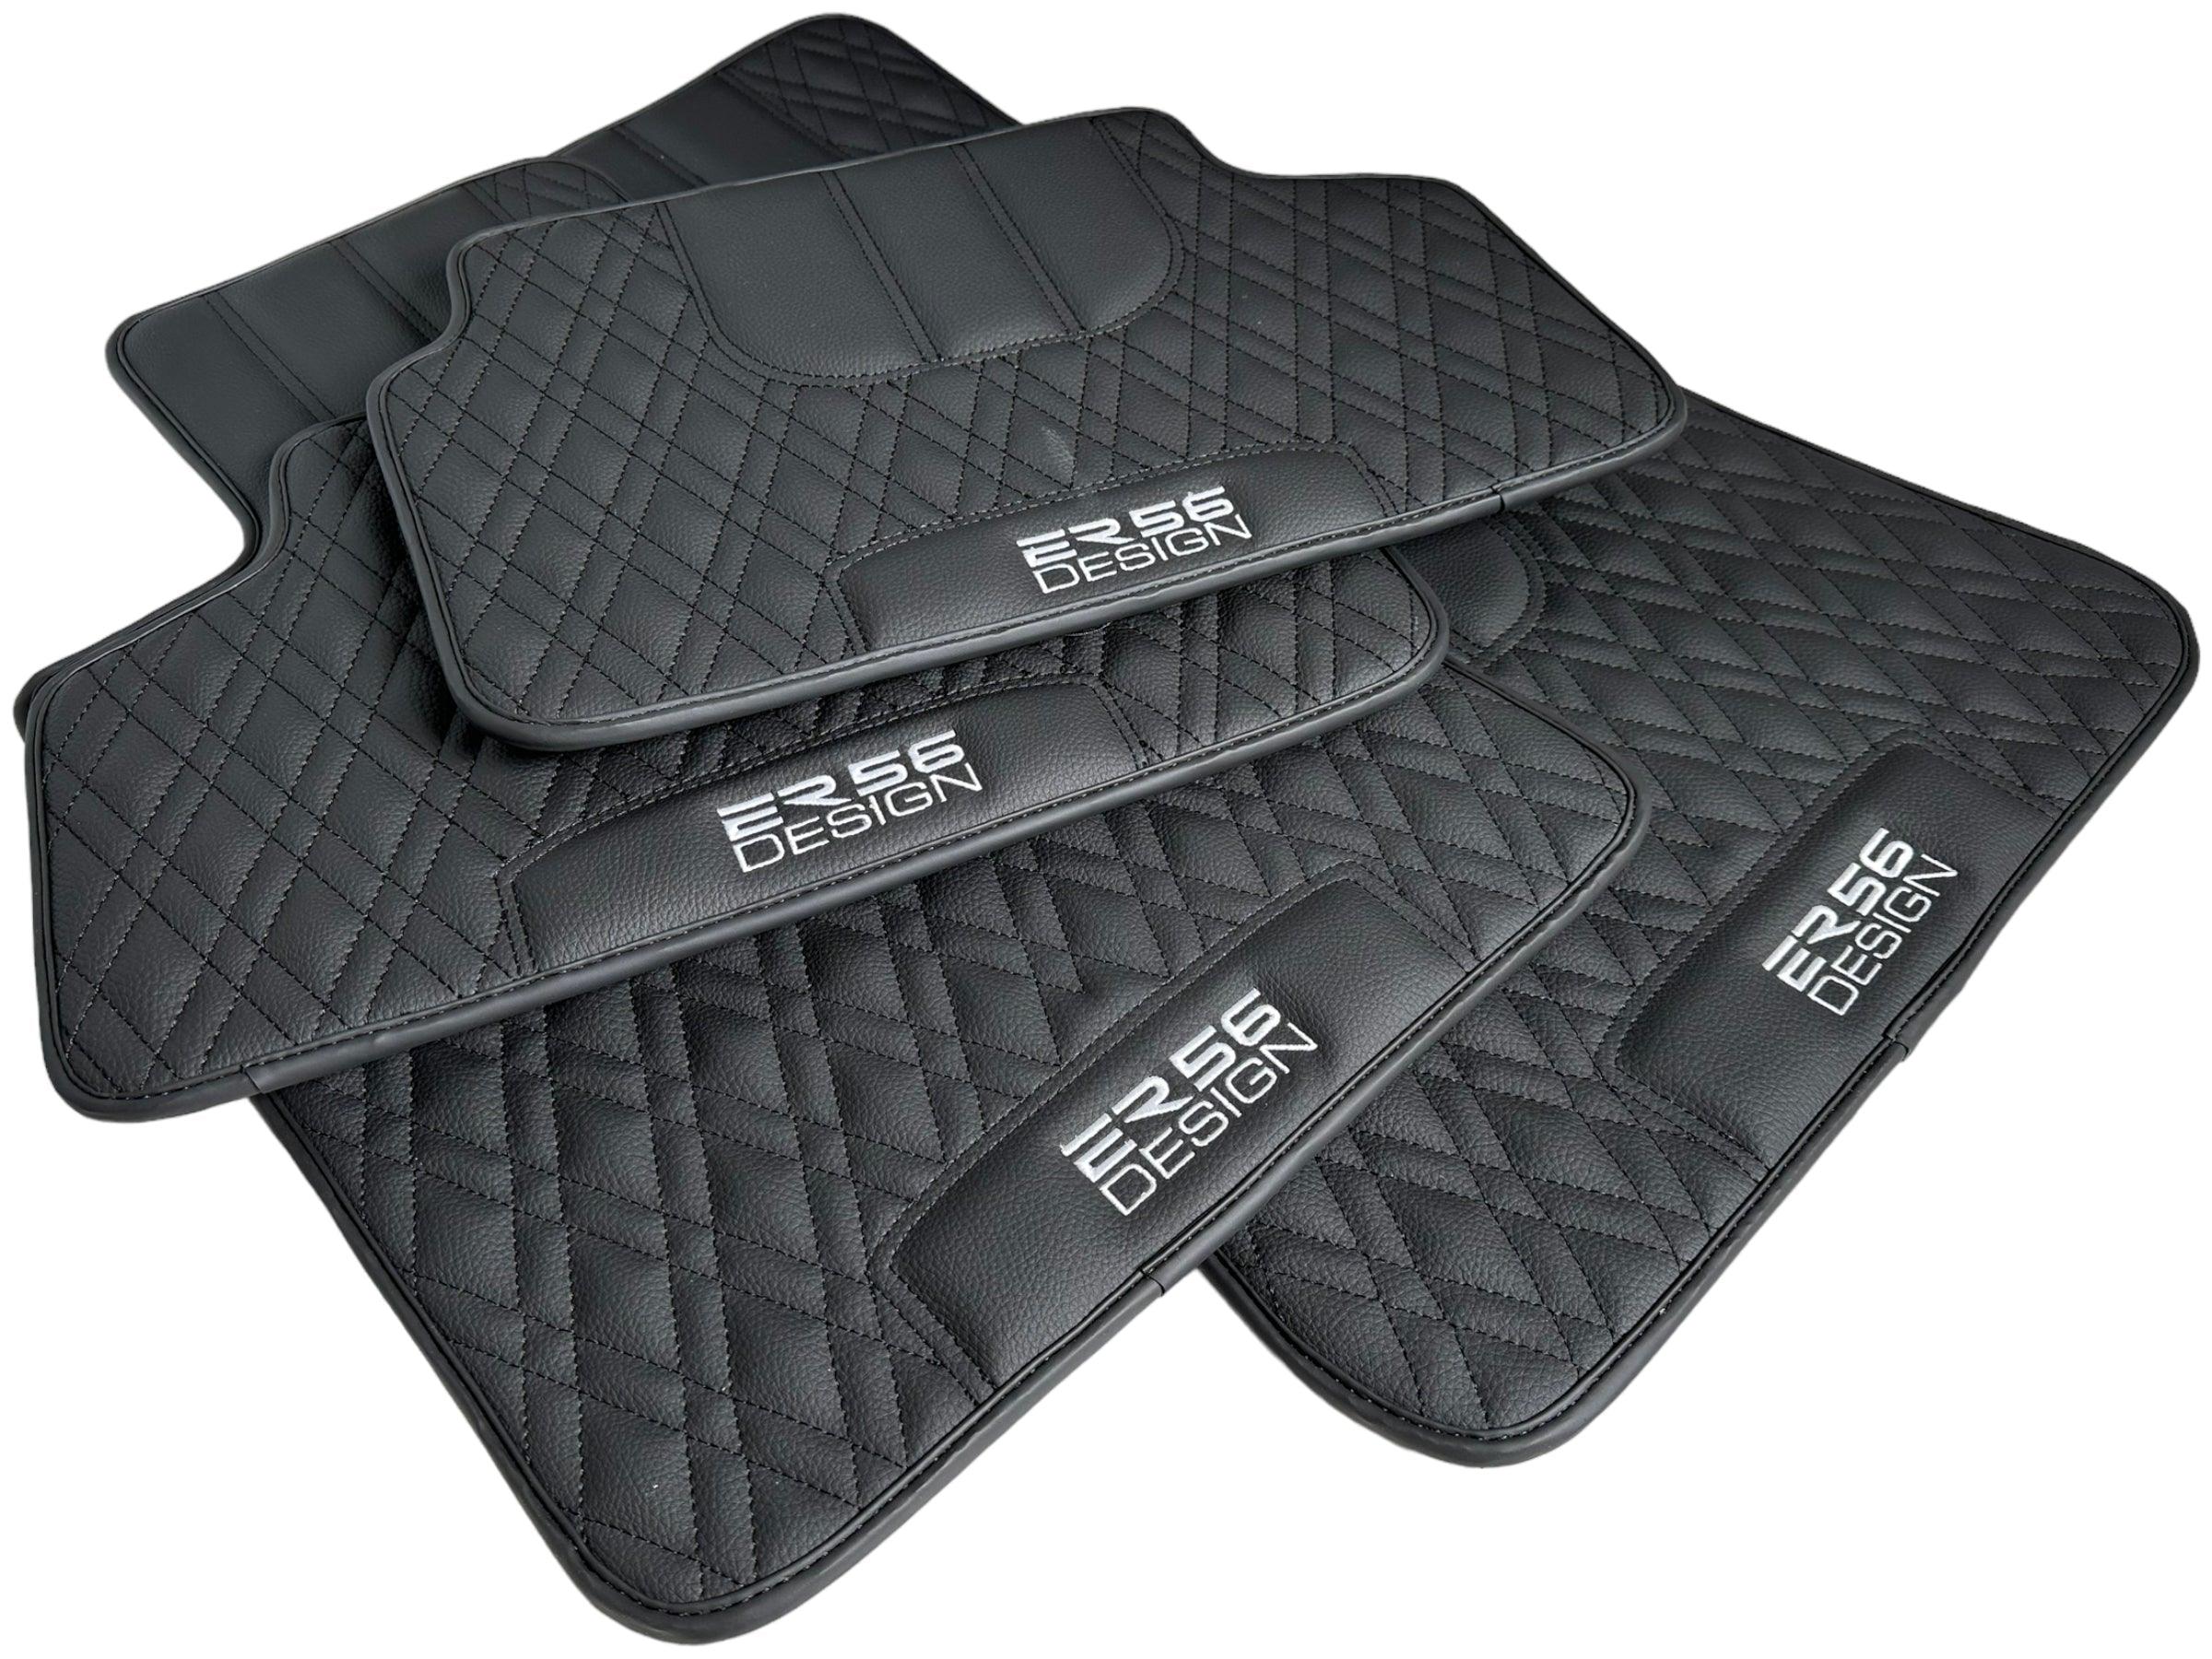 Floor Mats For BMW 3 Series E36 4-door Sedan Black Leather Er56 Design - AutoWin